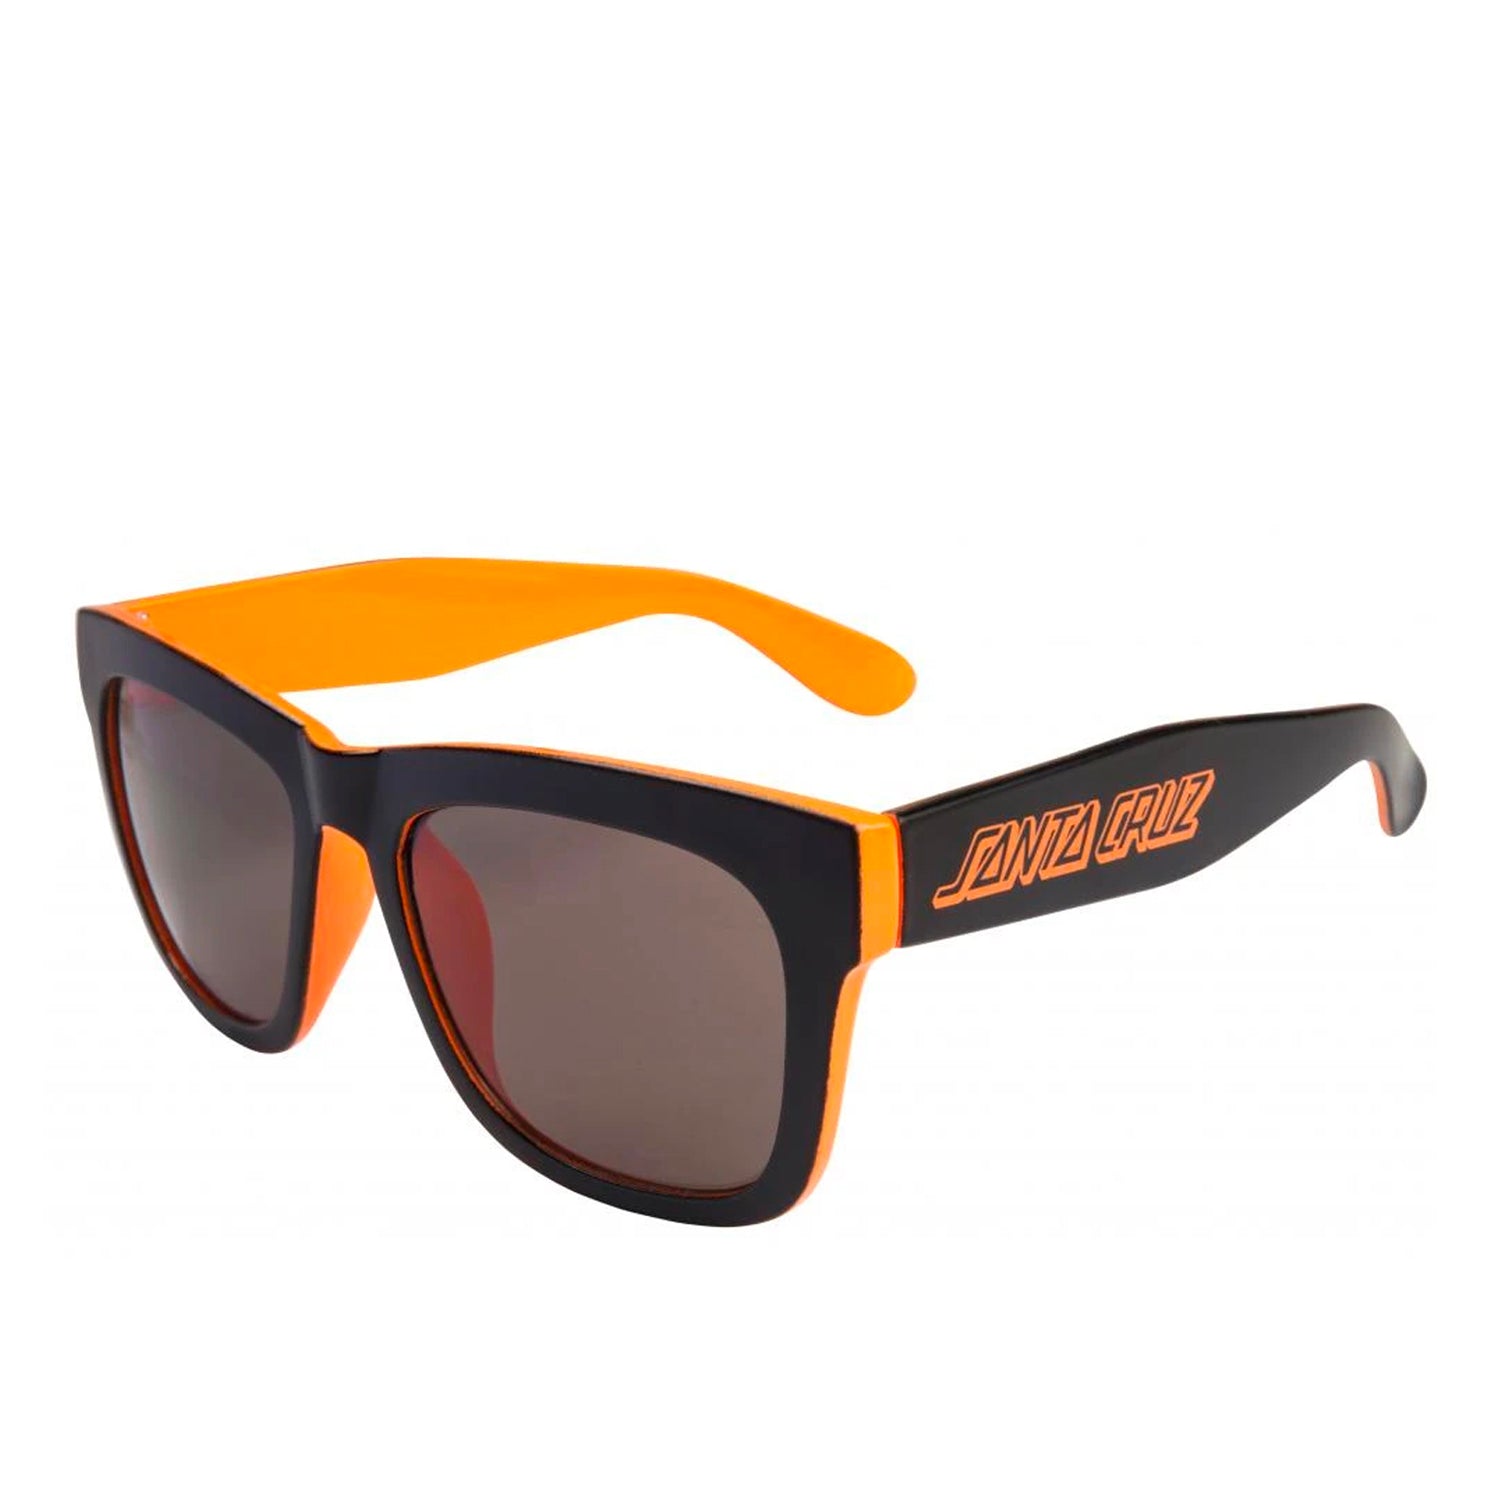 Santa Cruz Dazed Sunglasses - Black/Fluro Orange - Prime Delux Store